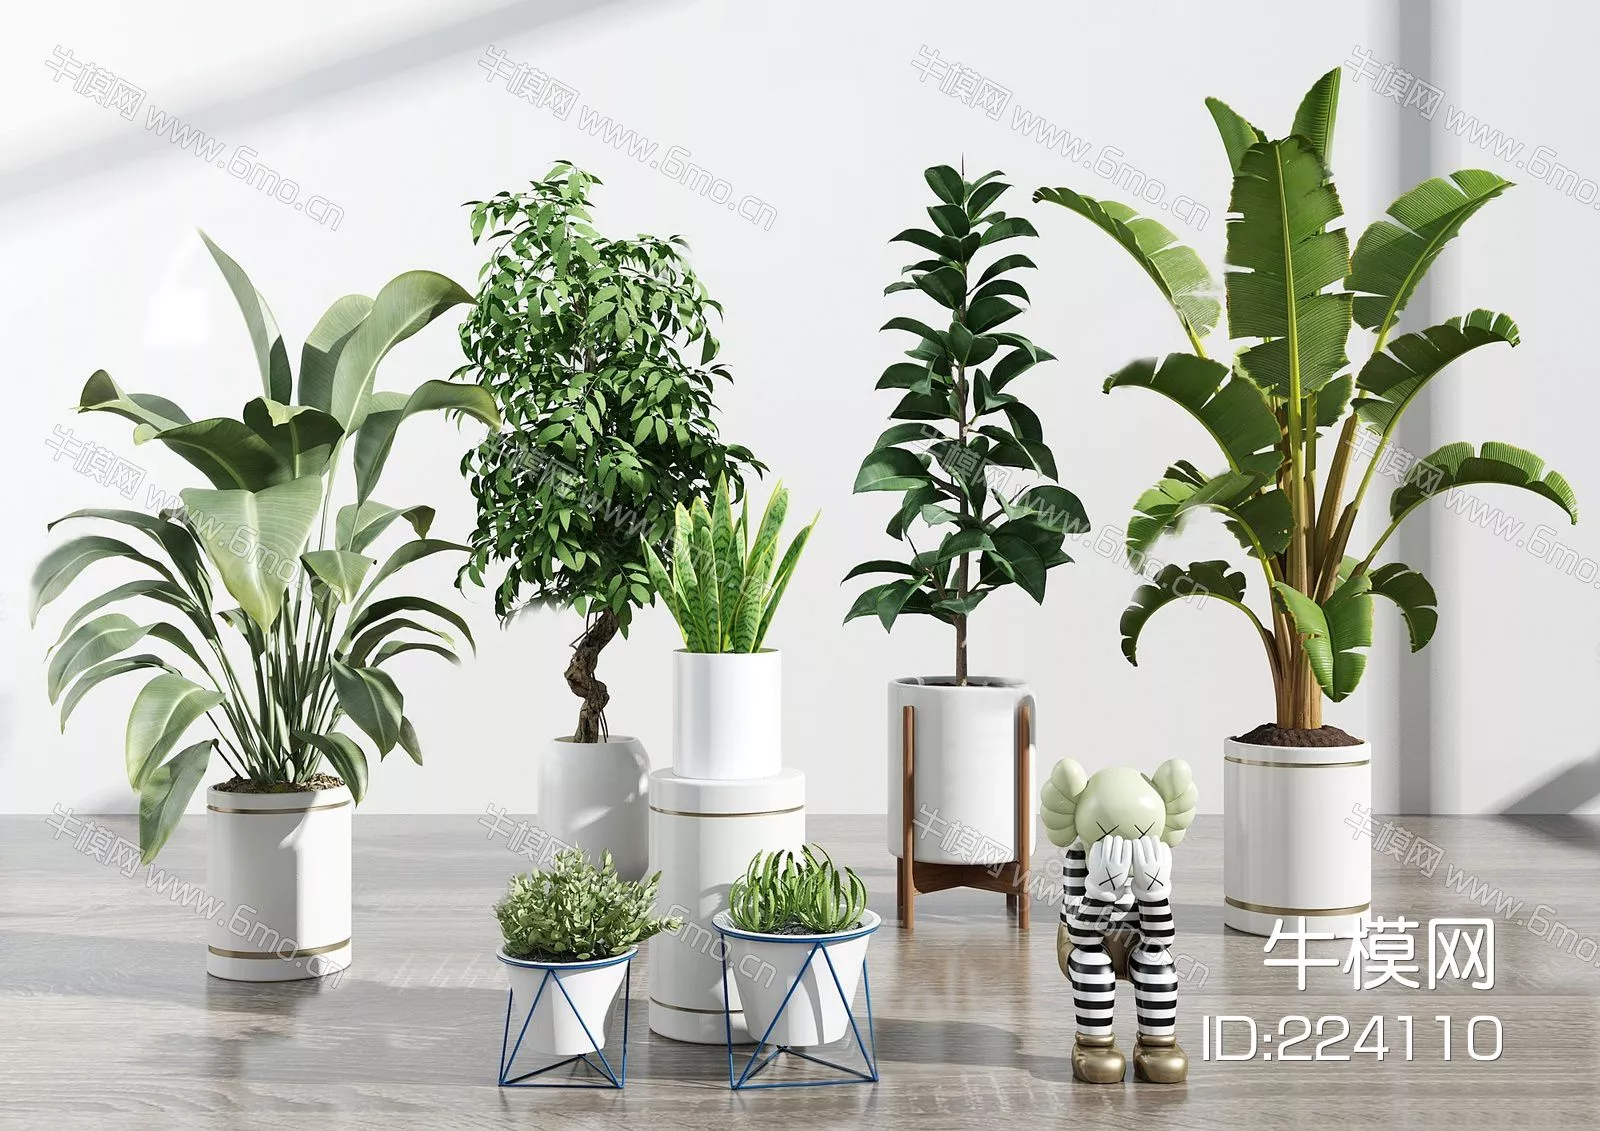 MODERN POTTED PLANT - SKETCHUP 3D MODEL - ENSCAPE - 224110